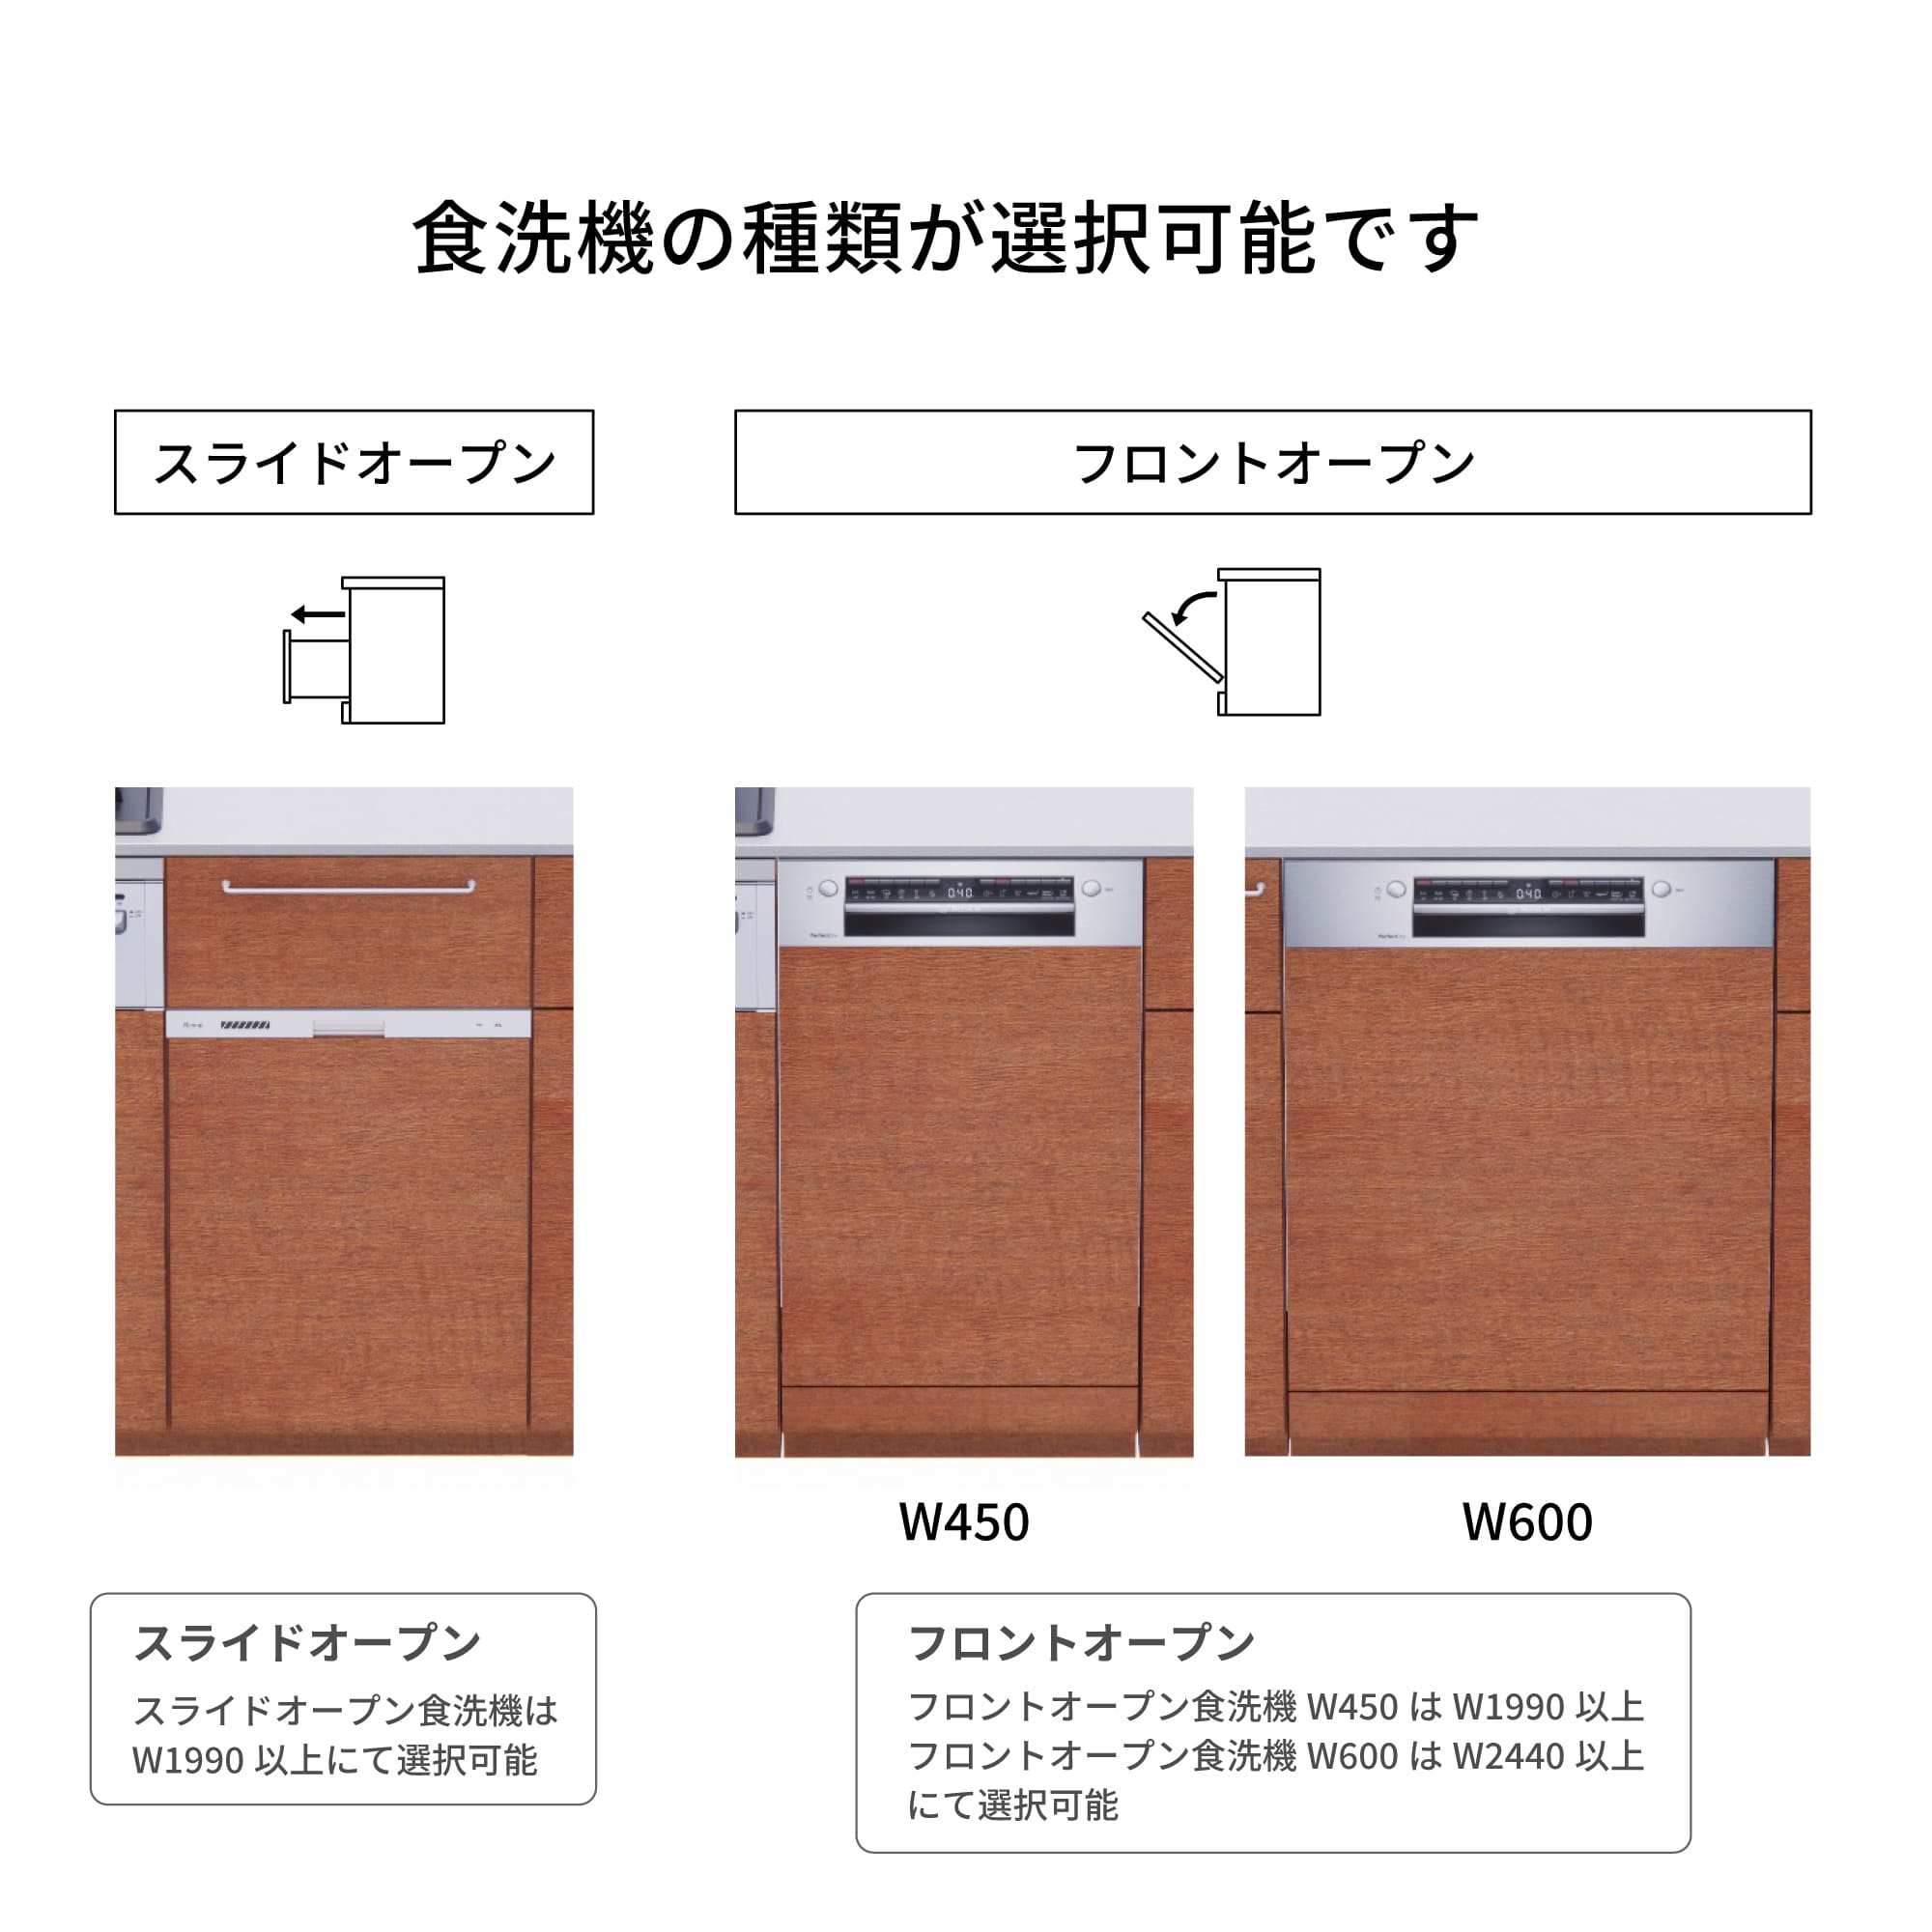 木製システムキッチン 対面型 W2440～2740・コンロあり / オーブンなし / 食洗機あり KB-KC022-44-G183 食洗機が選択できます